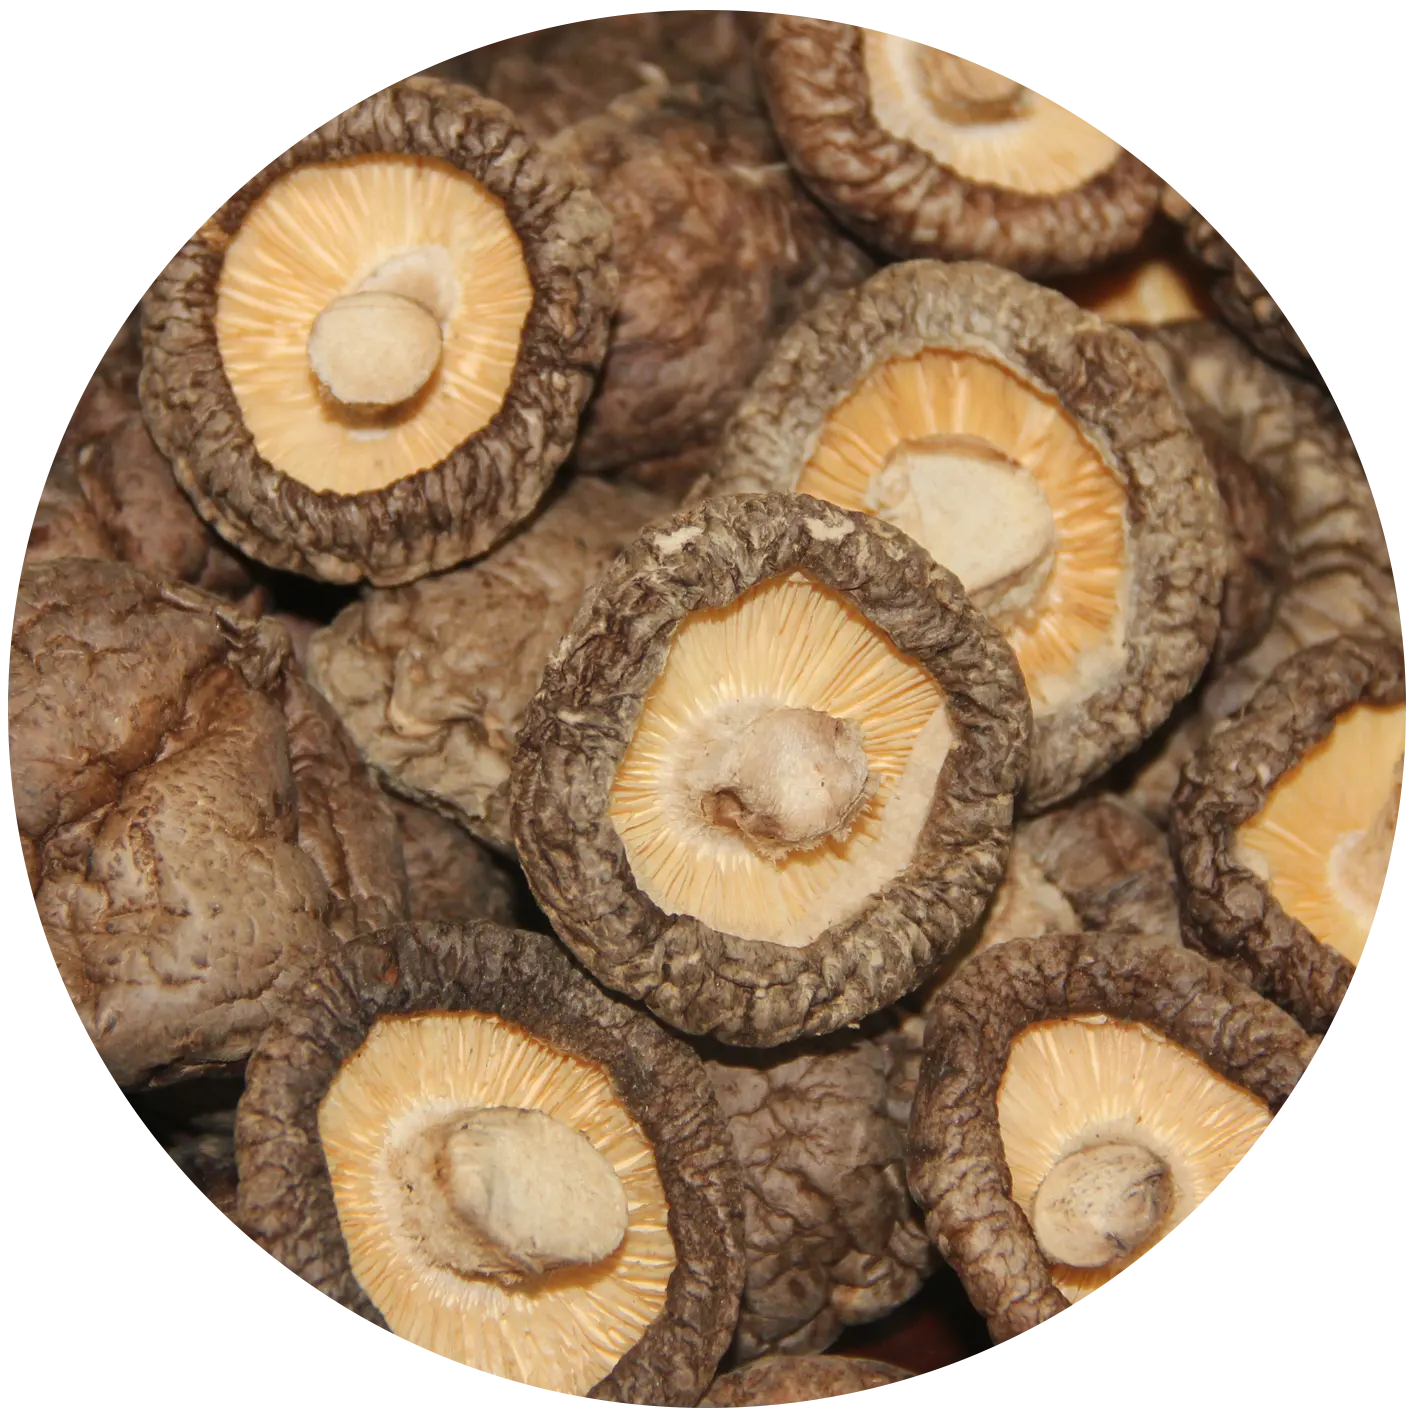 Commercio all'ingrosso essiccato Shiitake fungo pubblicità qualità materie prime leoni criniera fungo estratto di funghi secchi Shiitake prezzo Per Kg